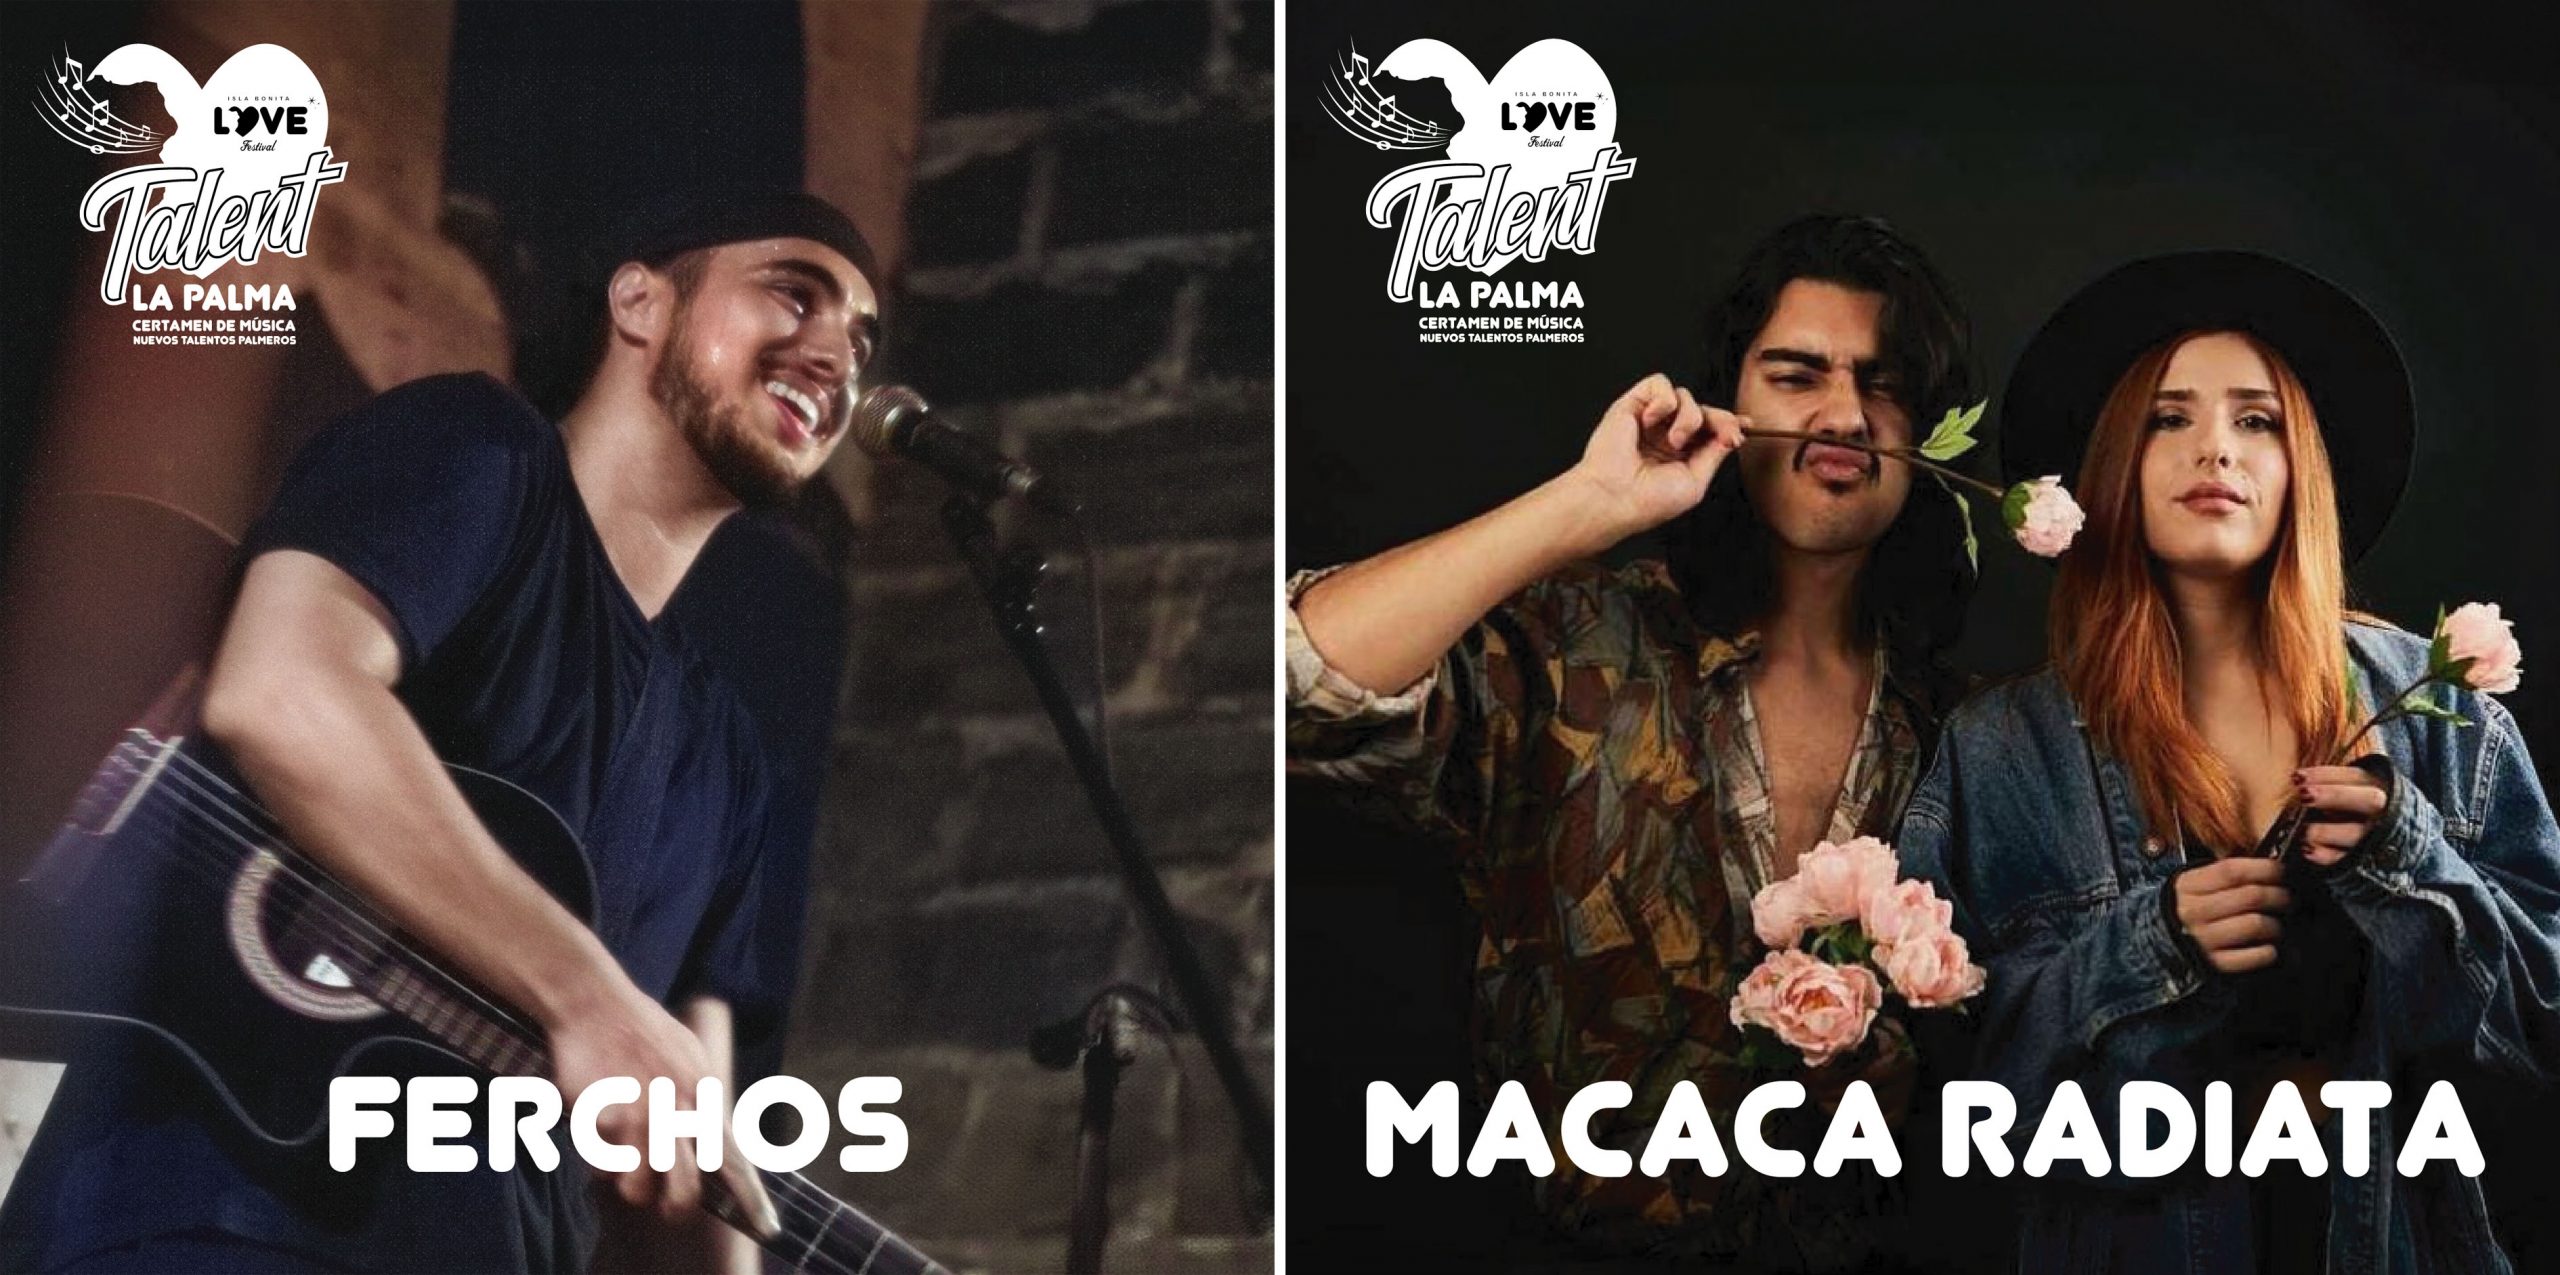 Ferchos y Macaca Radiata estarán en el Love Festival tras ganar el certamen de talentos